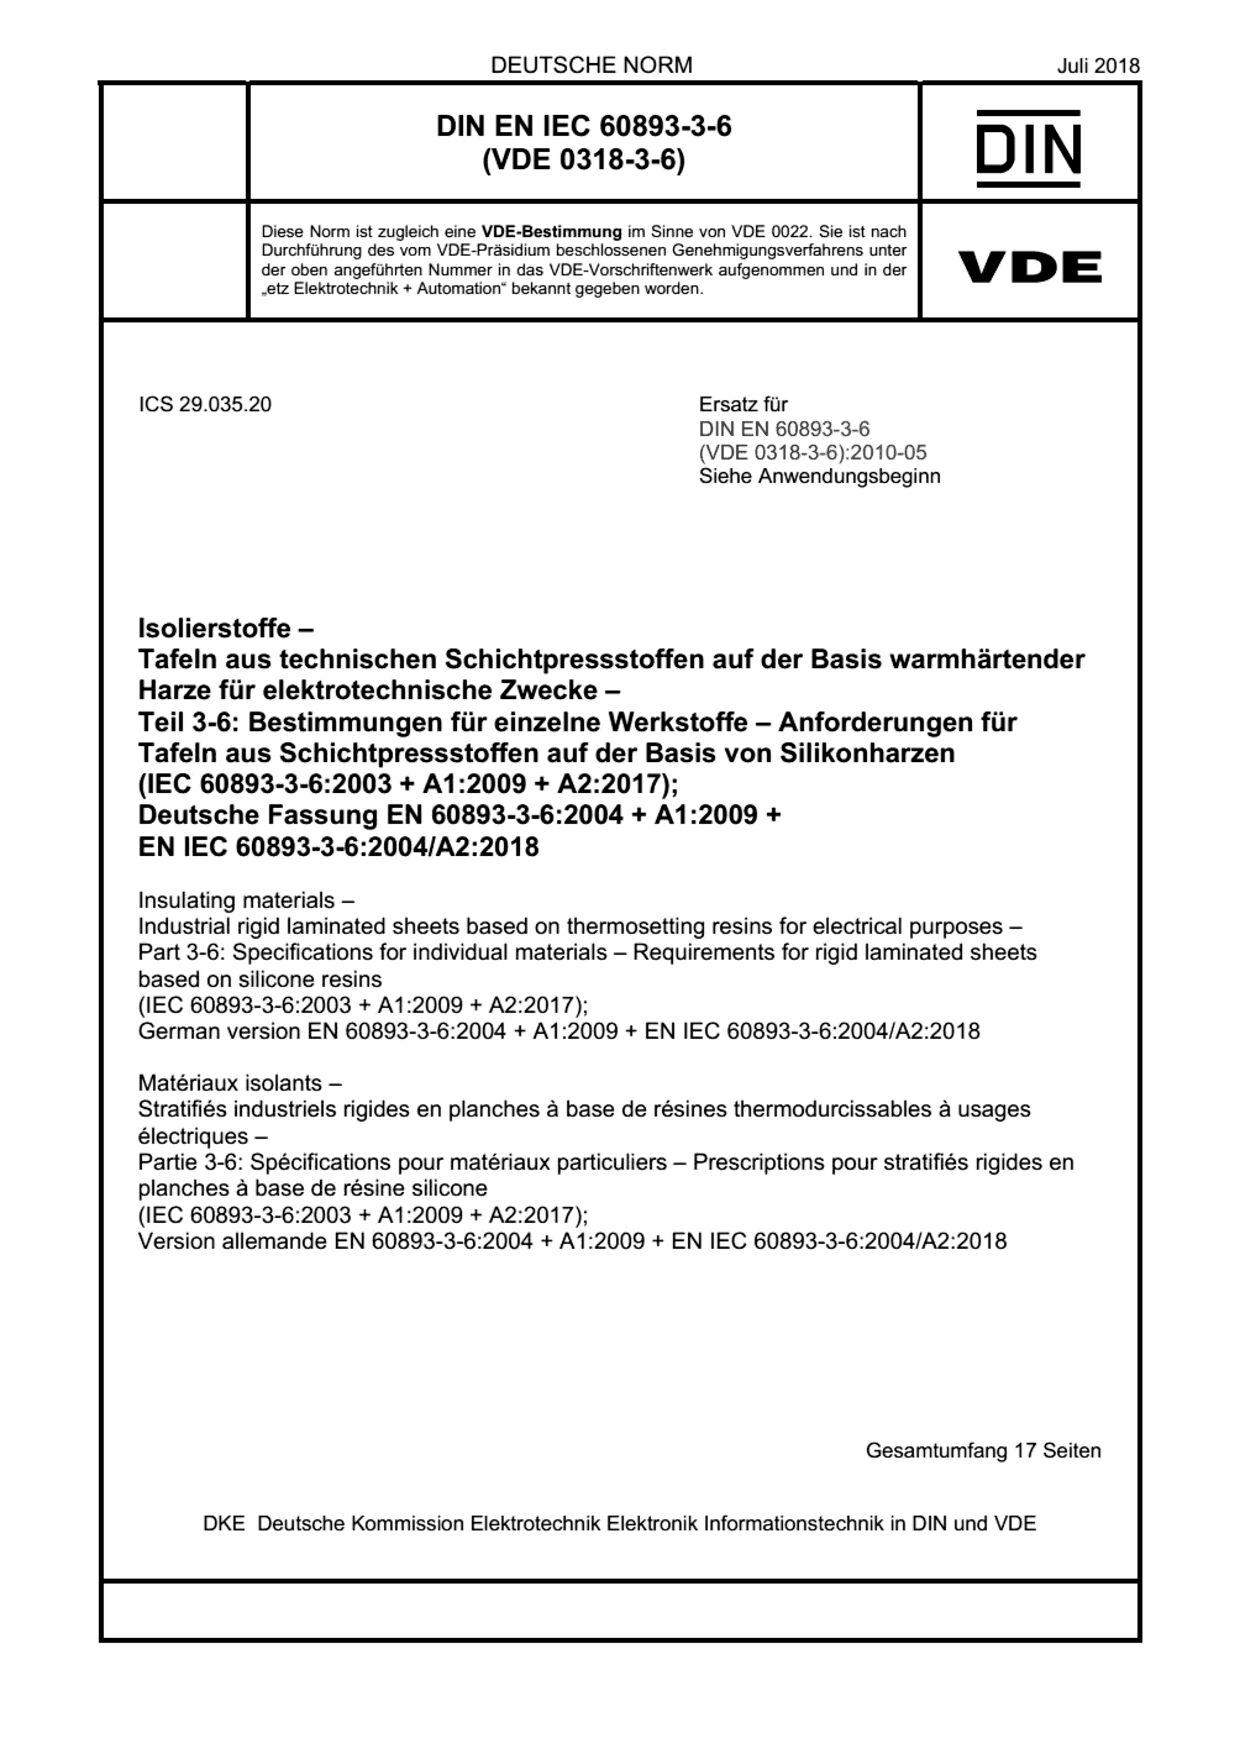 DIN EN IEC 60893-3-6:2018